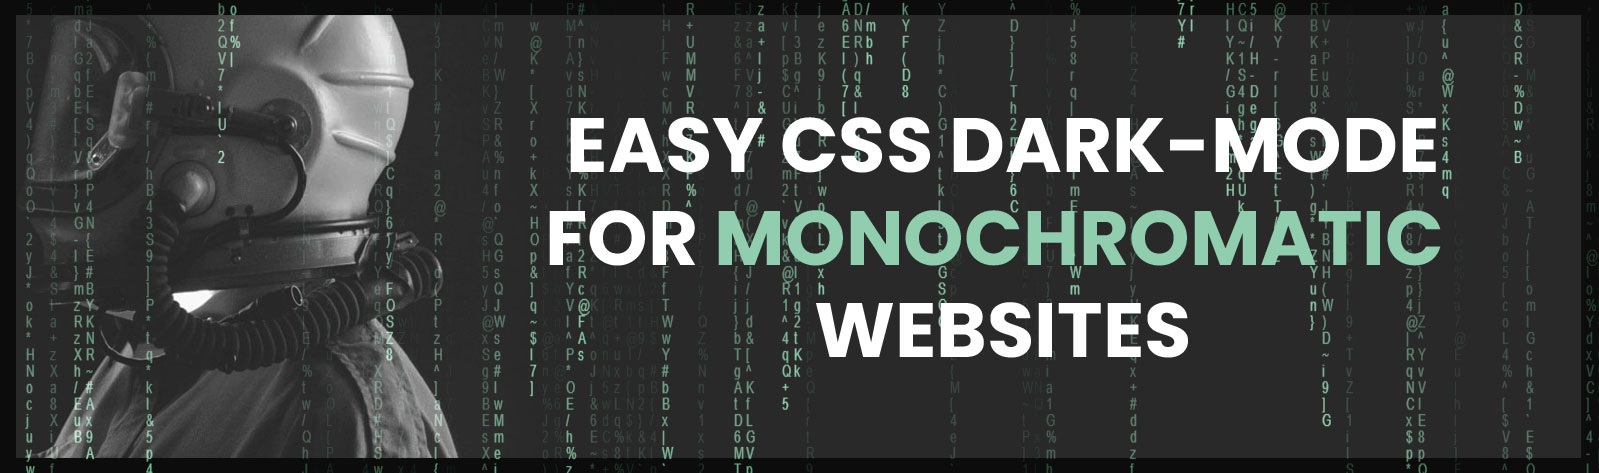 Easy CSS dark mode for monochromatic website.